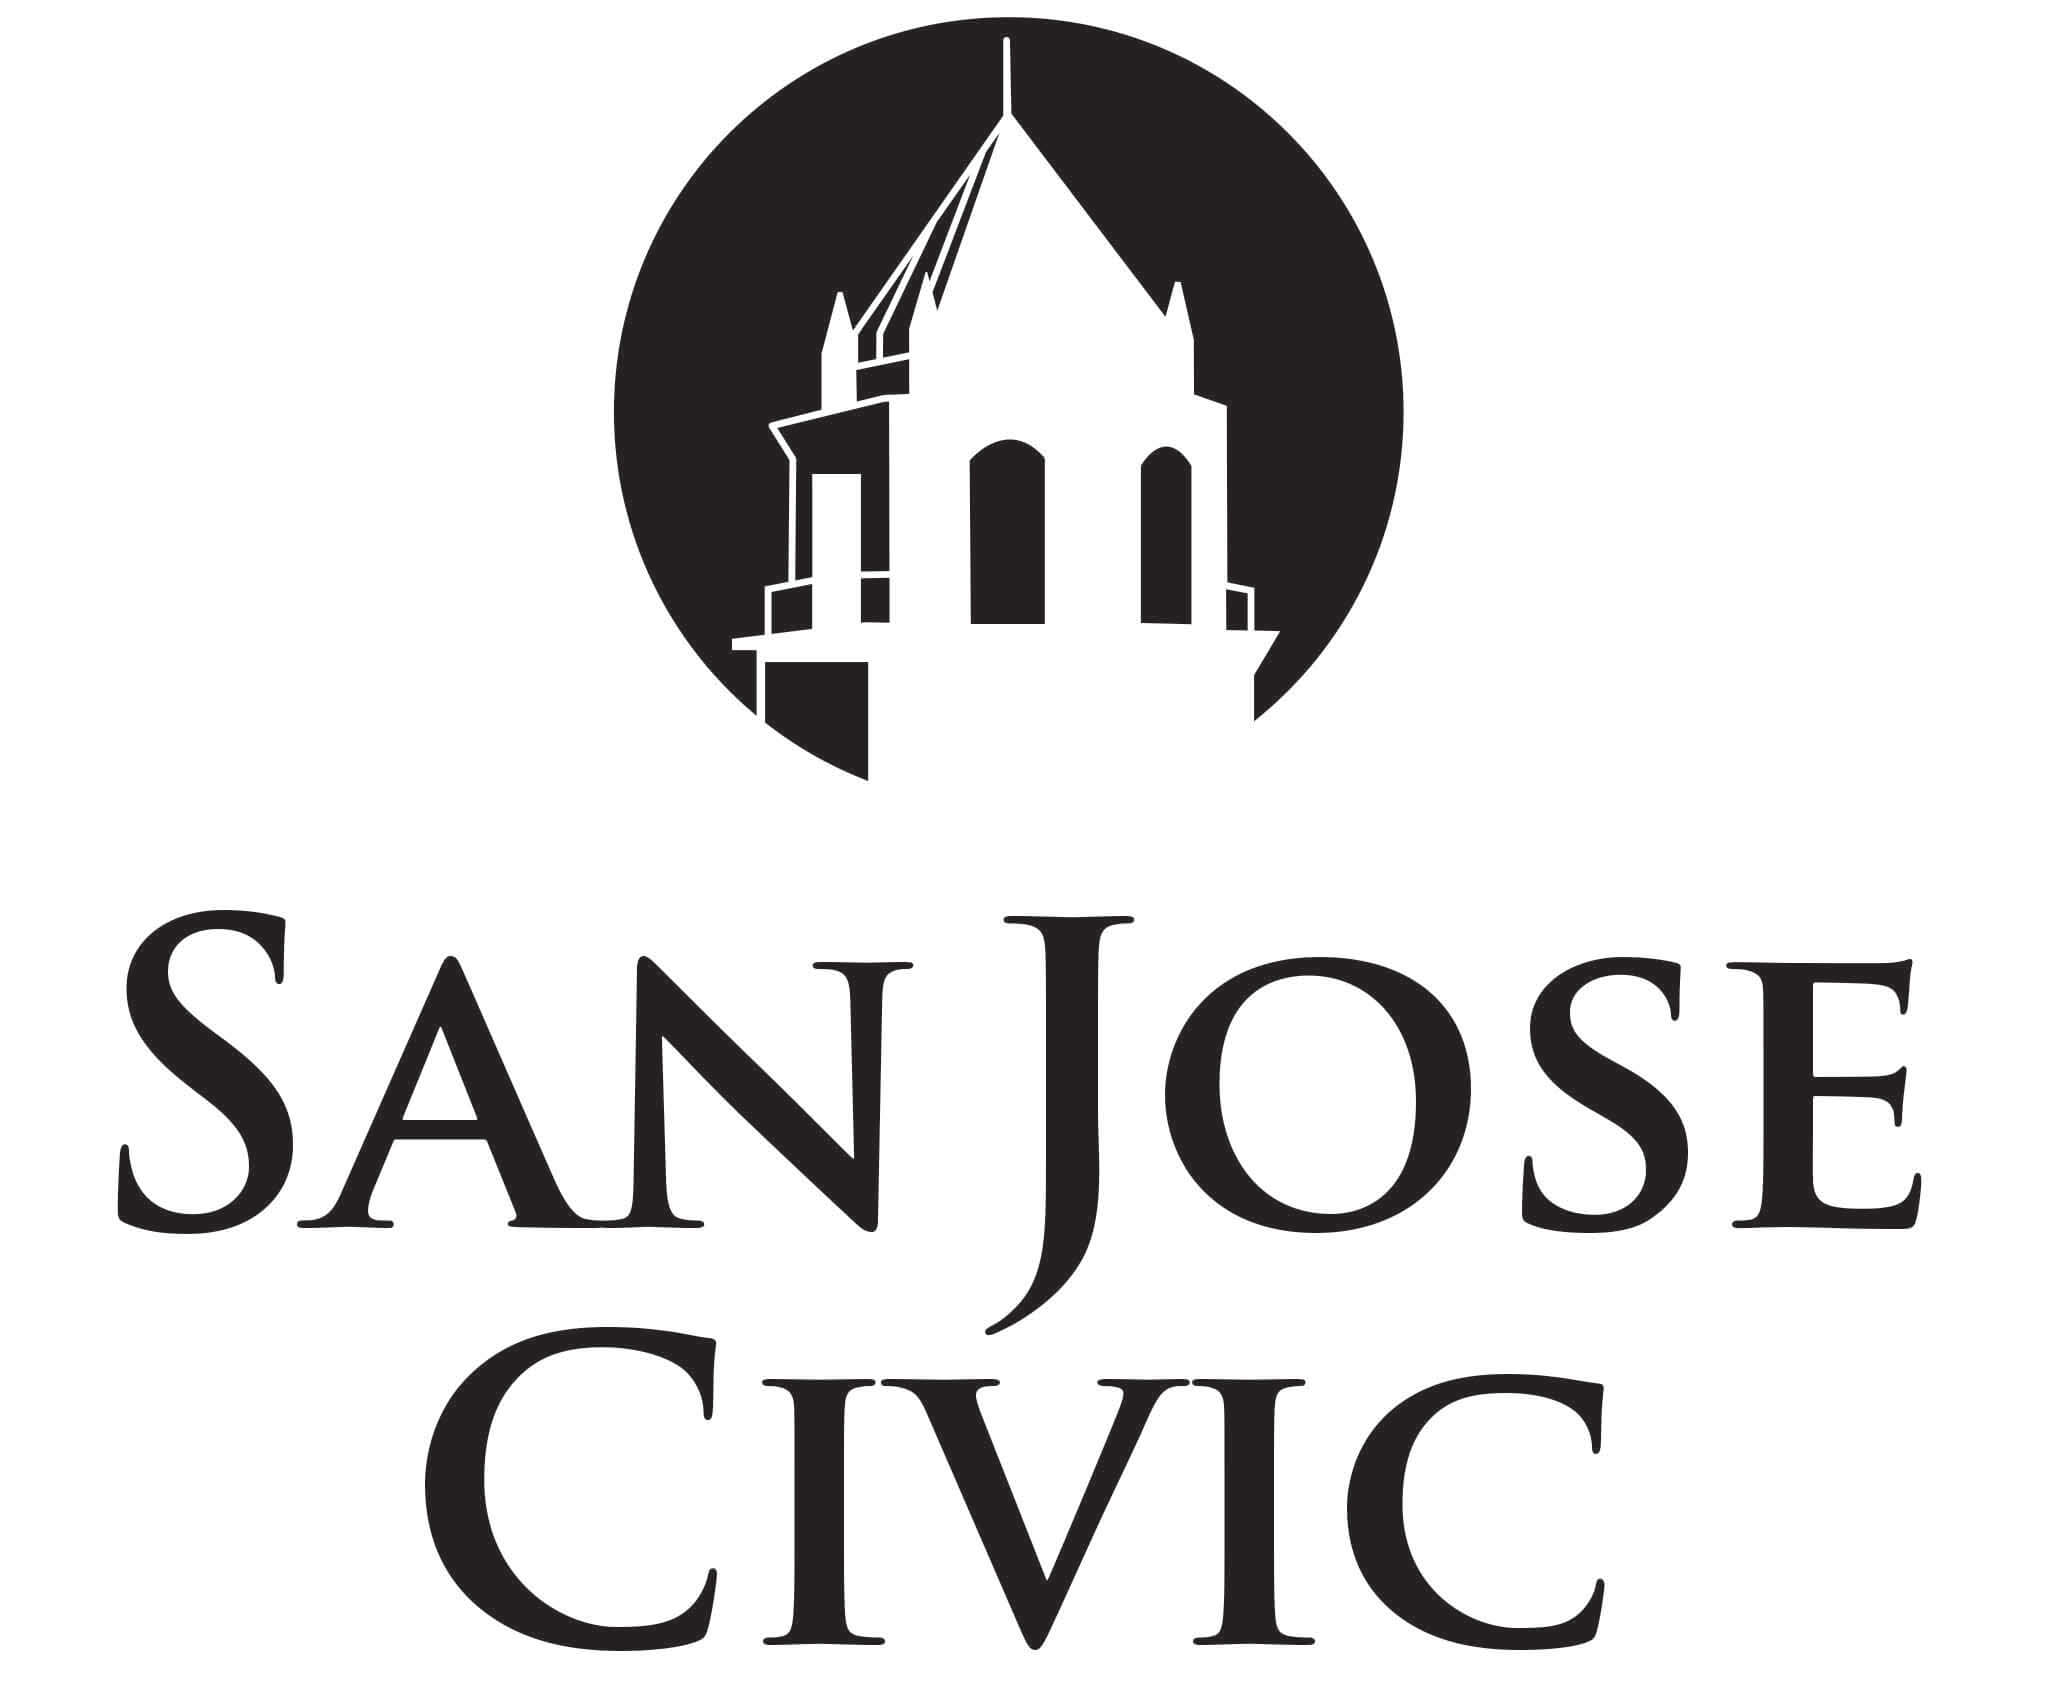 San Jose Civic